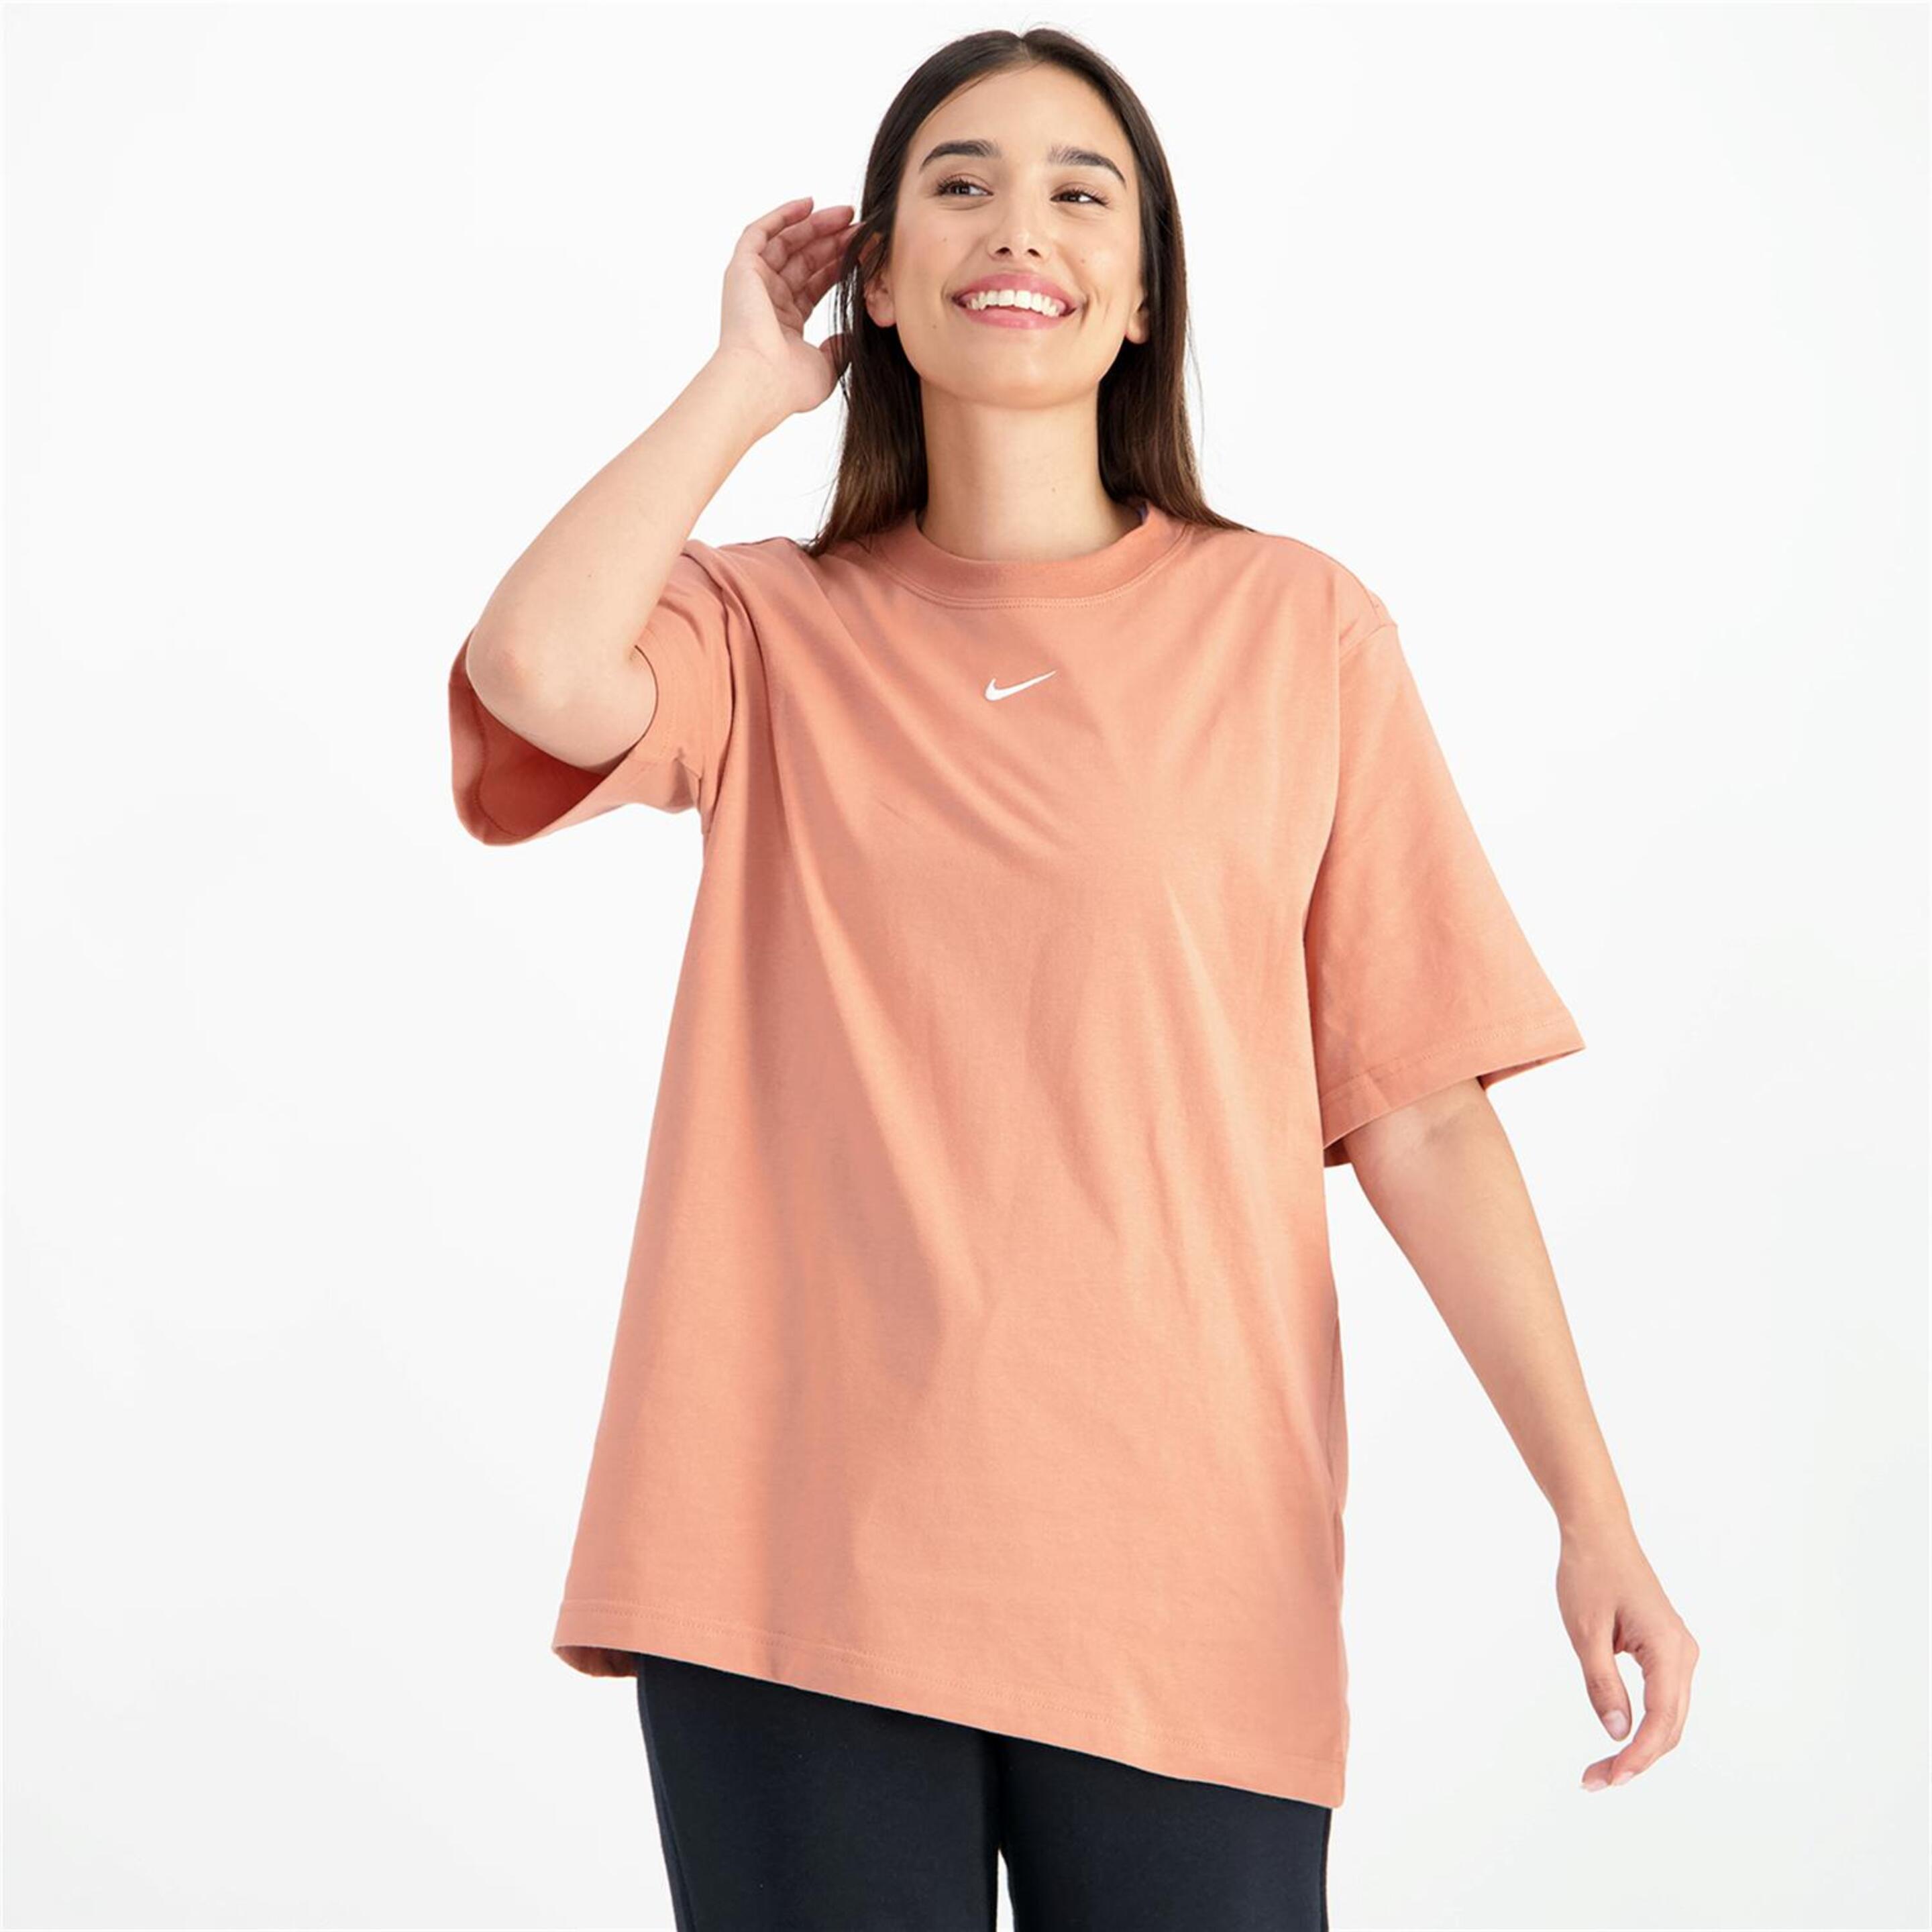 Camiseta Nike - marron - Camiseta Oversize Mujer